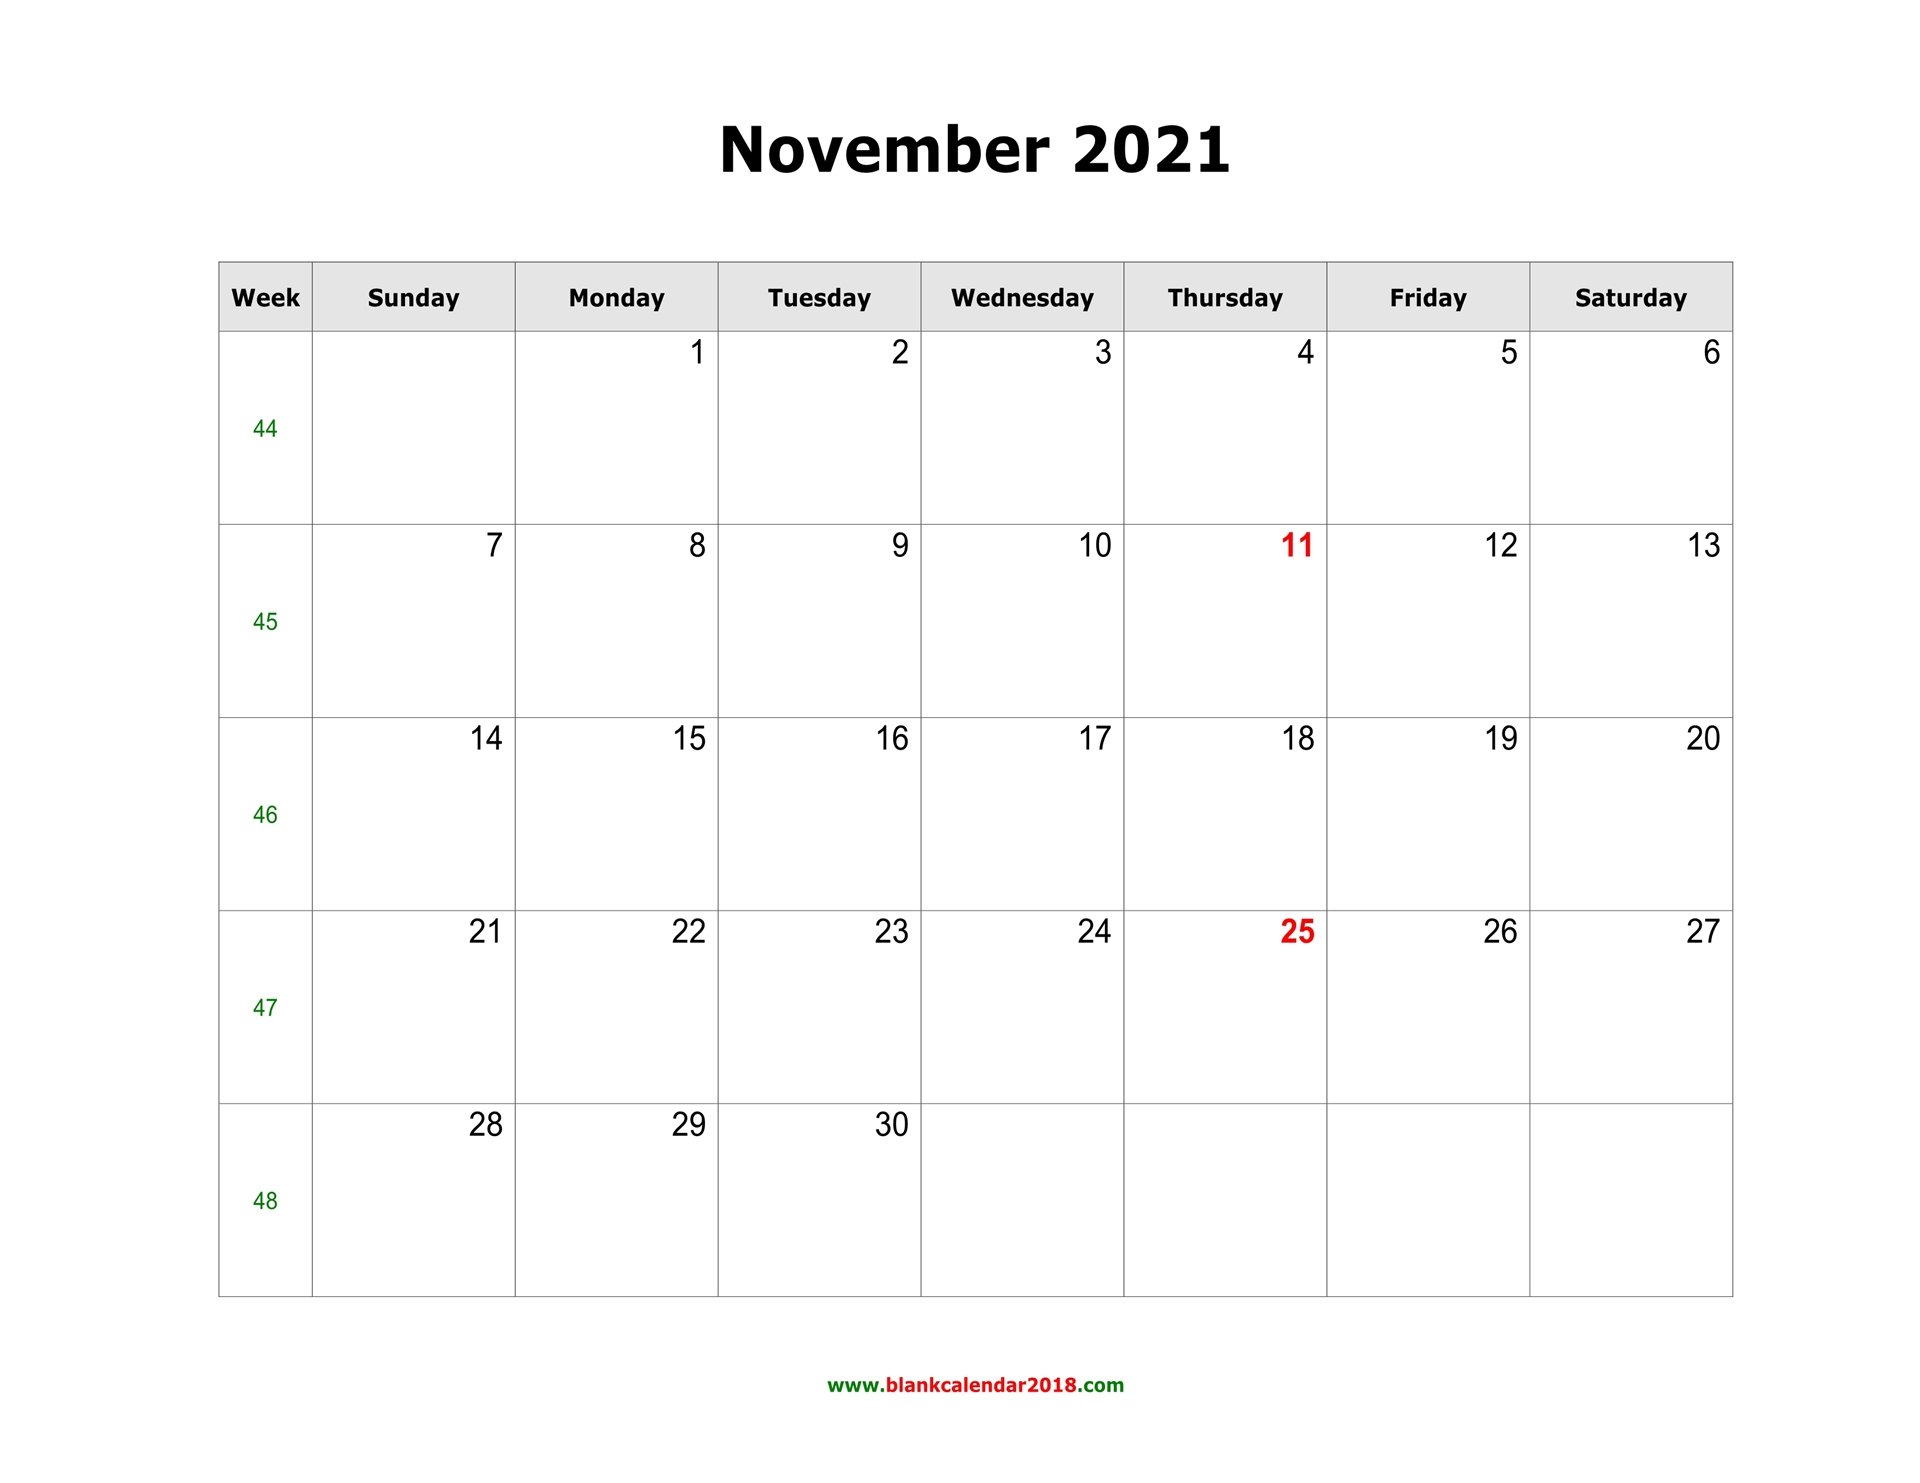 Blank Calendar For November 2021 Blank November 2021 Calendar